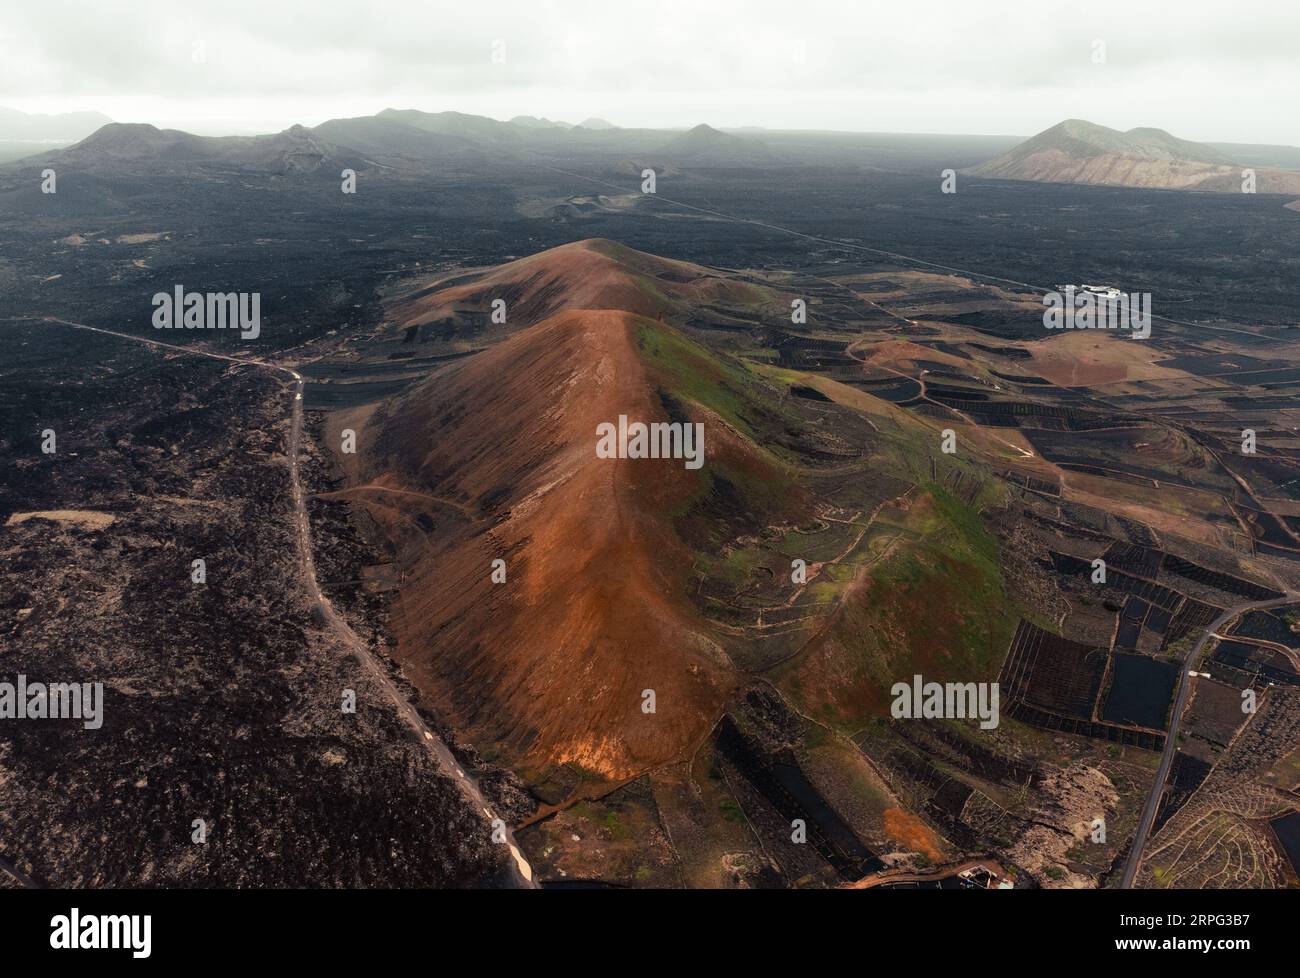 Luftbild von Vulkanen auf Lanzarote - Kanarische Inseln. Foto von vulkanischen dunklen Bergen und Kratern aus großer Höhe mit Drohne. Wunderschöne Landschaft Stockfoto